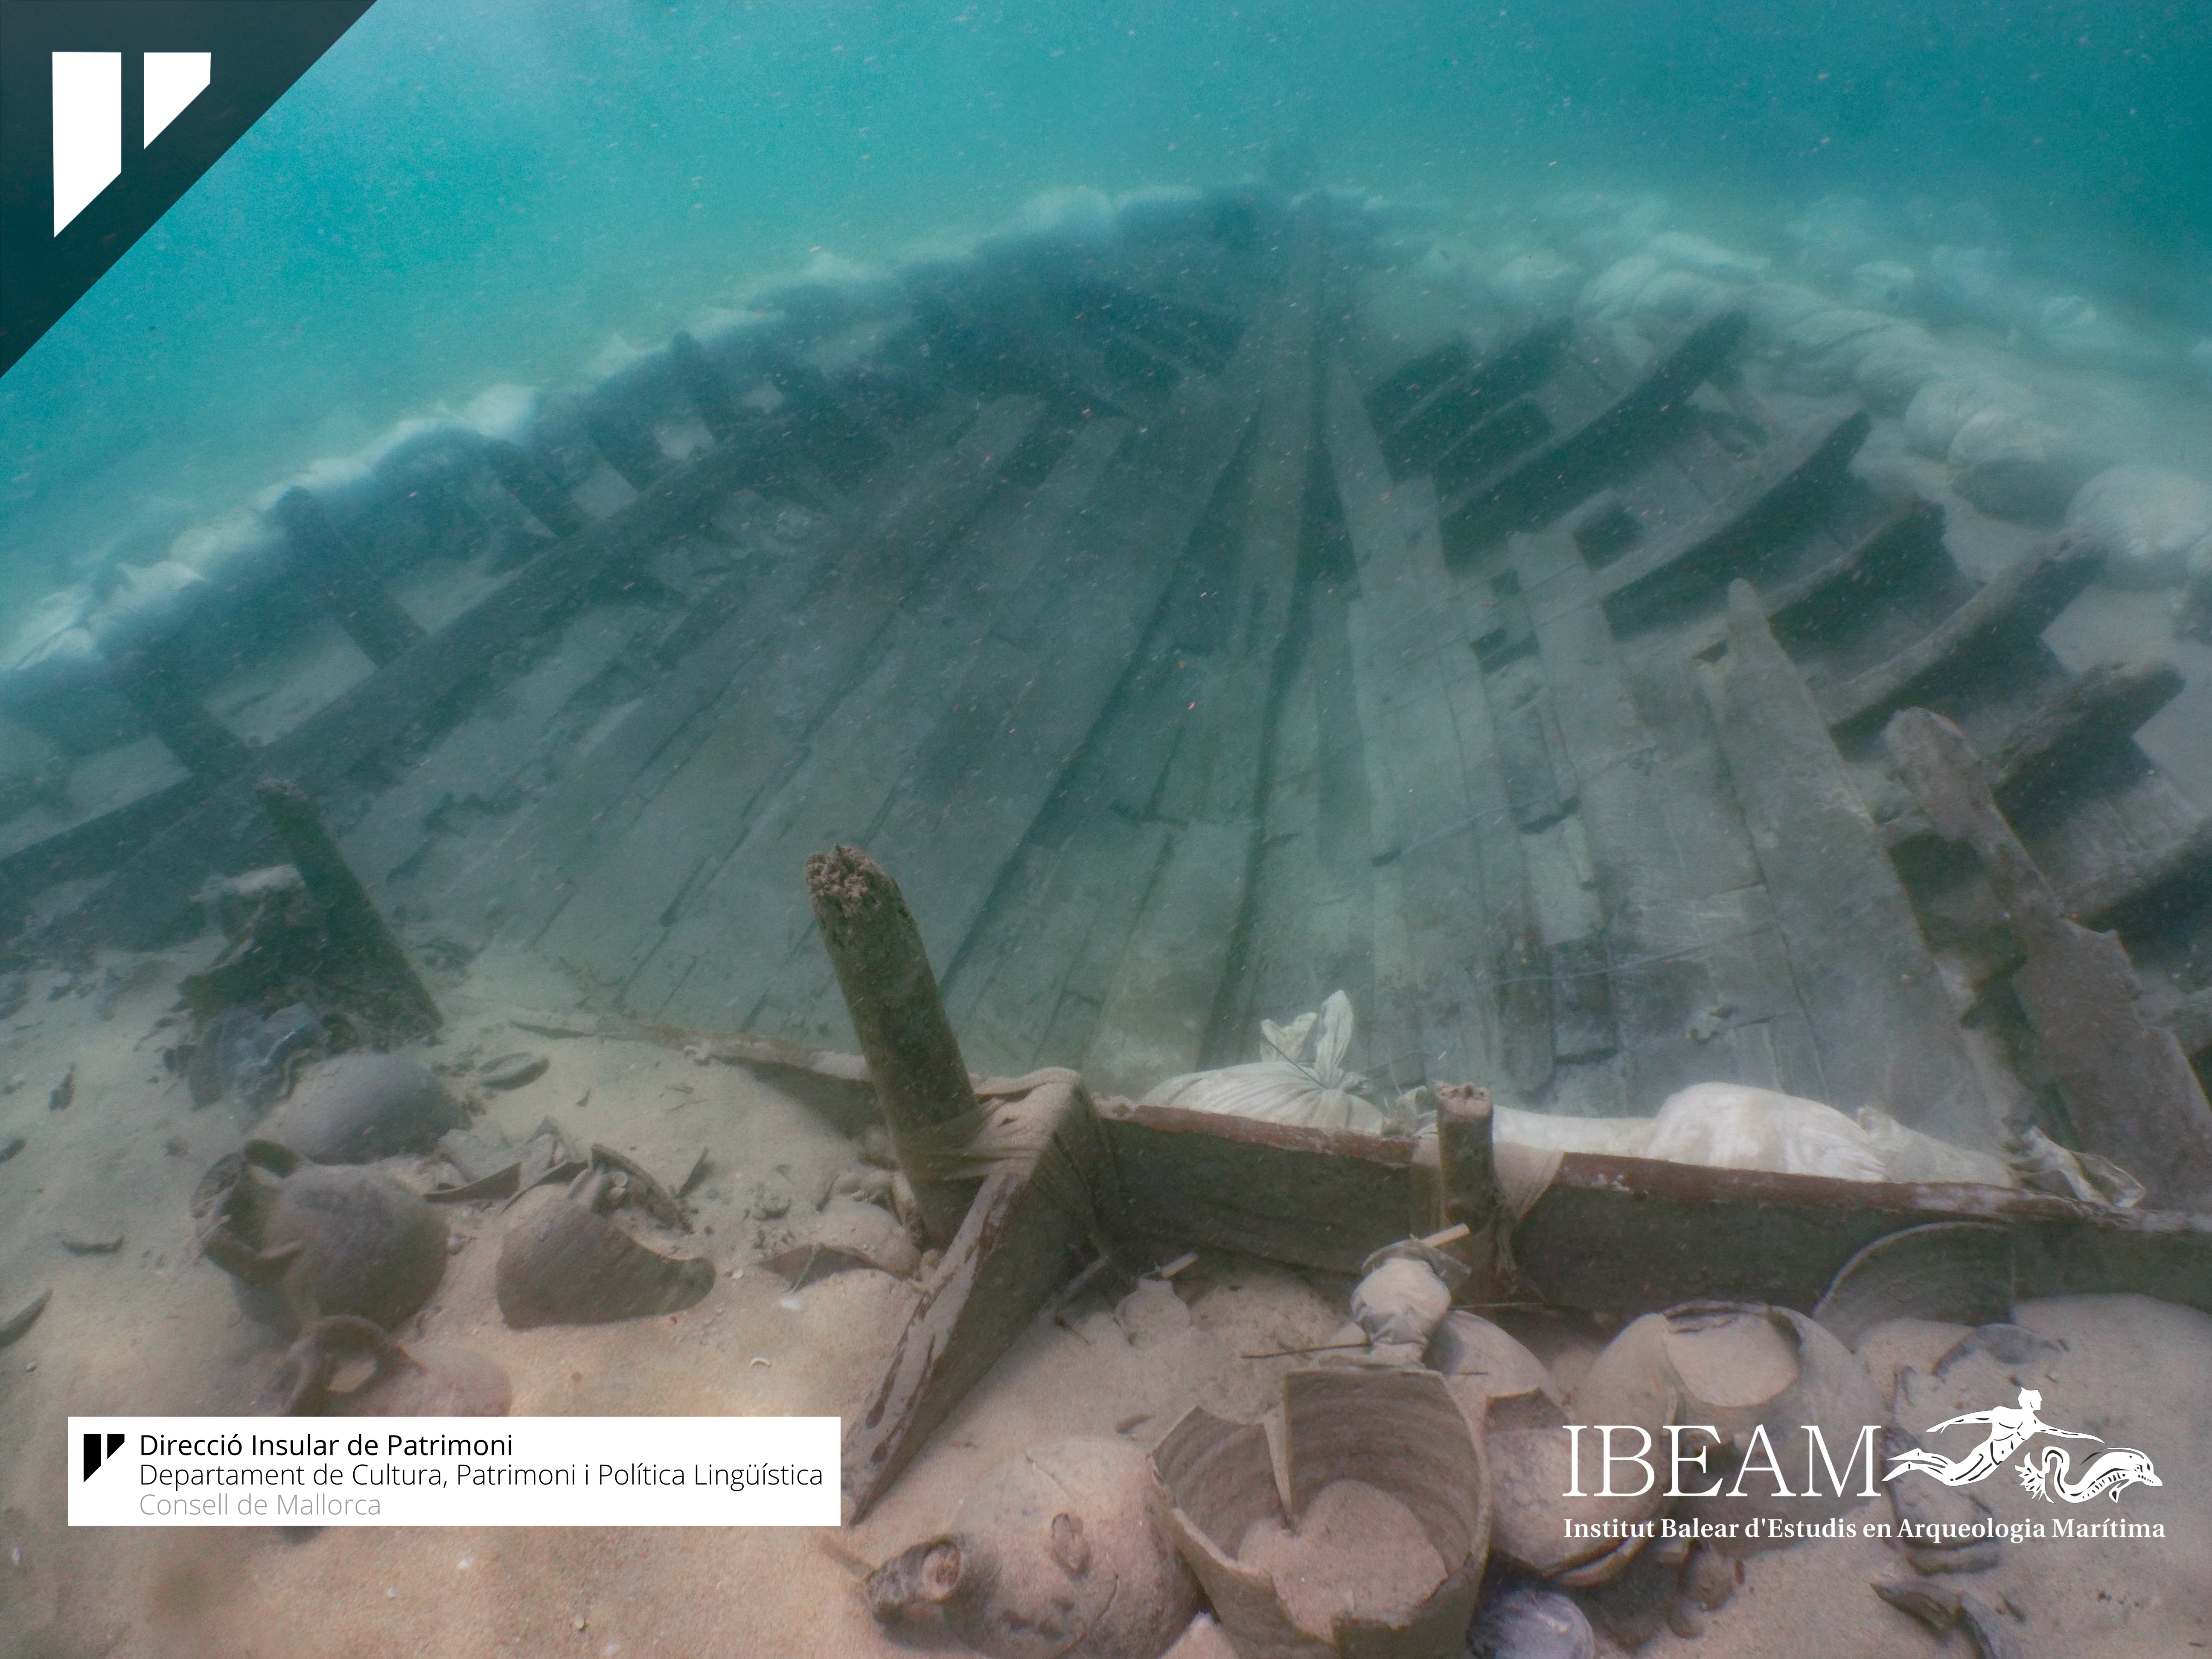 Detall del material arqueològic recuperat al derelicte de Can Pastilla (estructura naval)